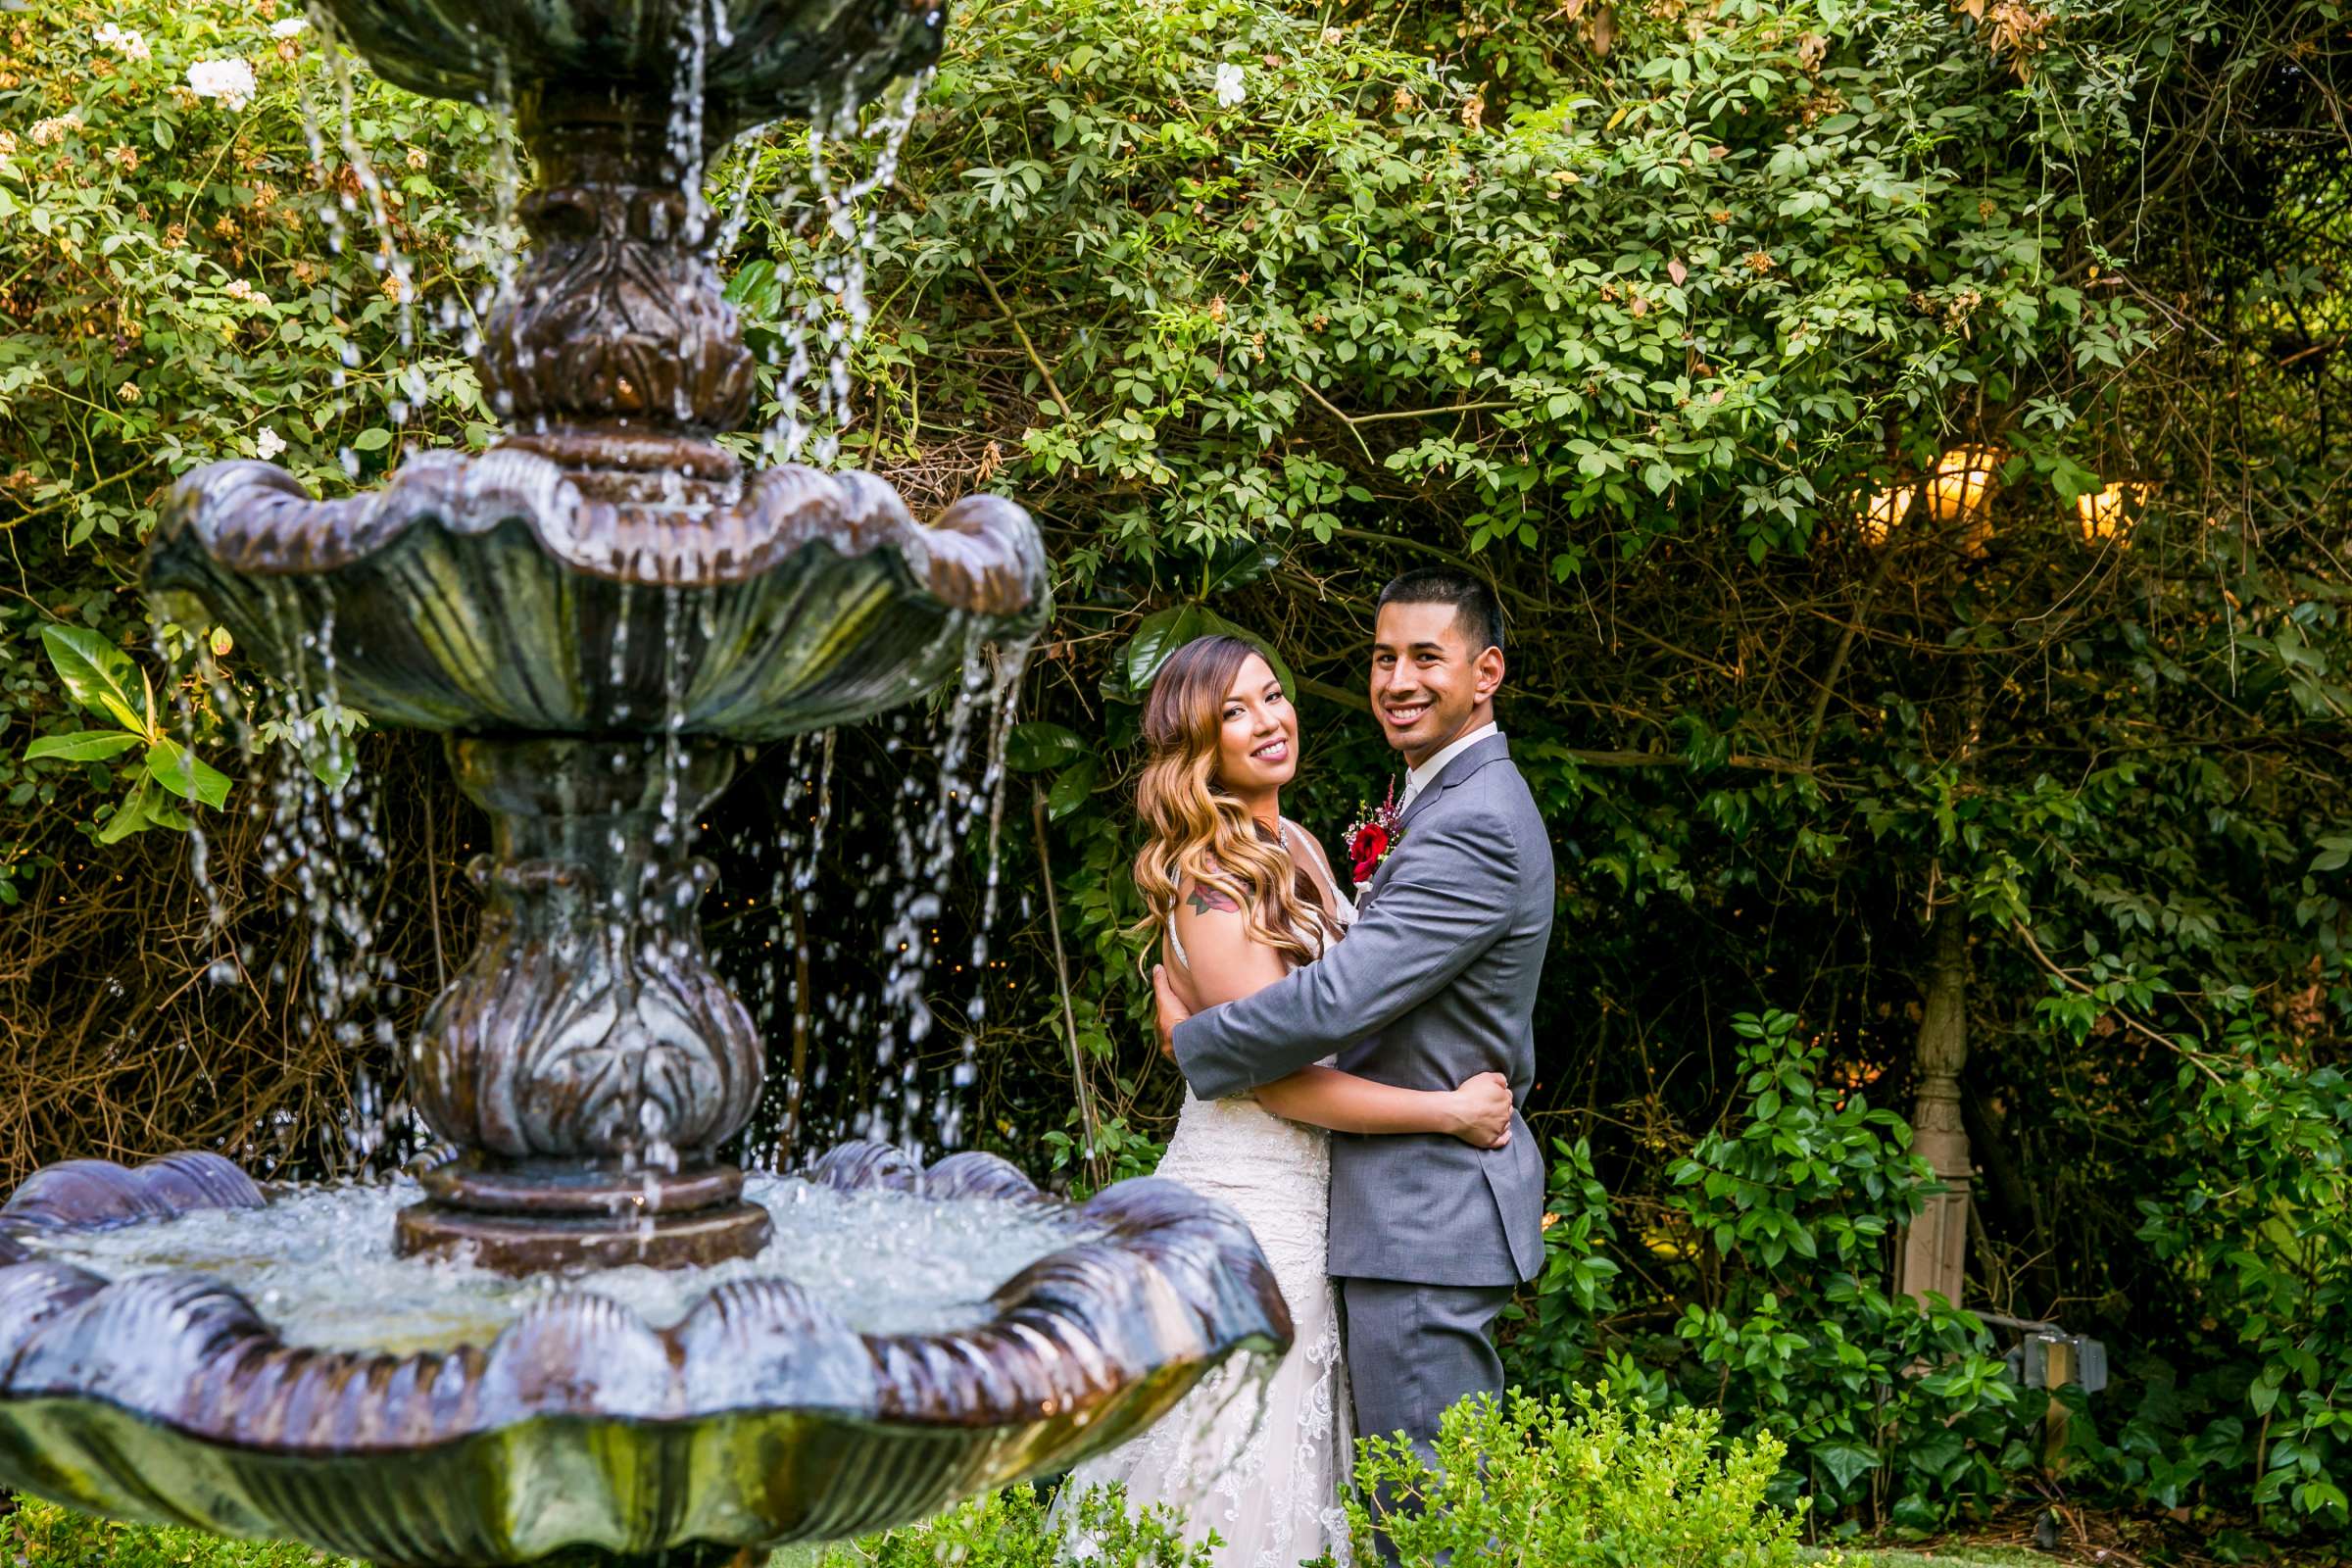 Twin Oaks House & Gardens Wedding Estate Wedding, Merrilynn and Trey Wedding Photo #102 by True Photography